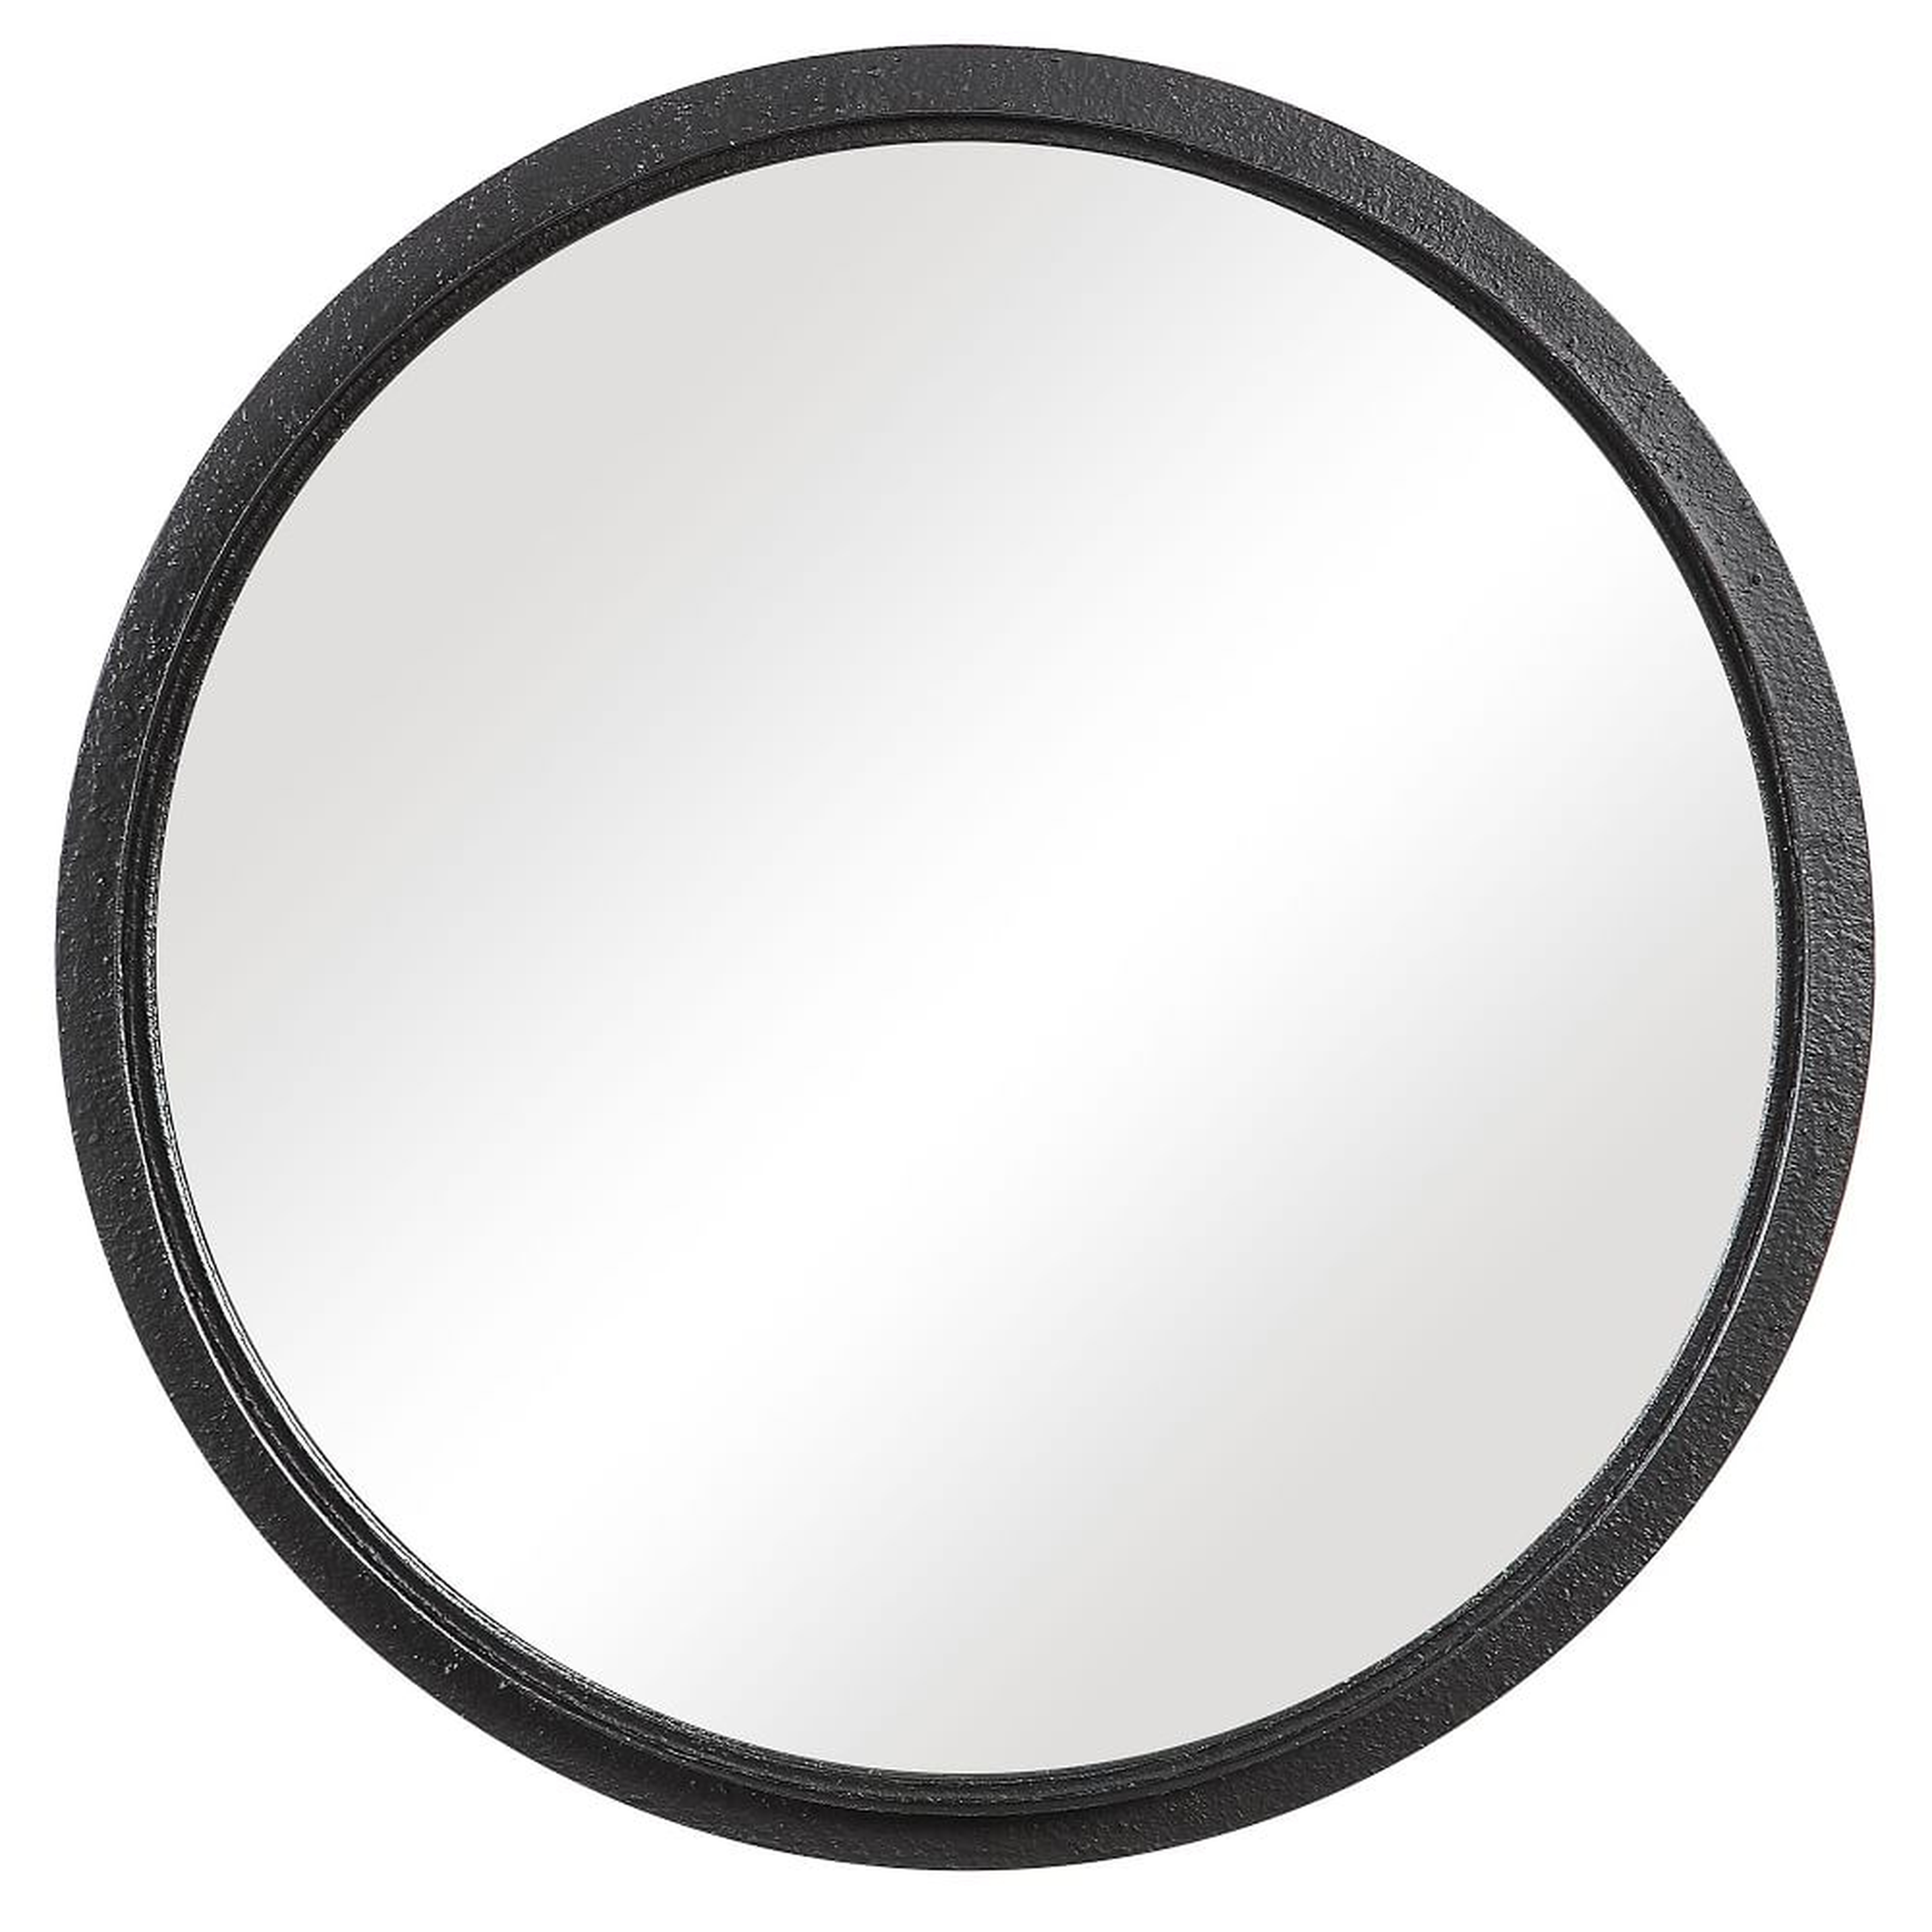 Textured Round Metal Mirror, Black - West Elm